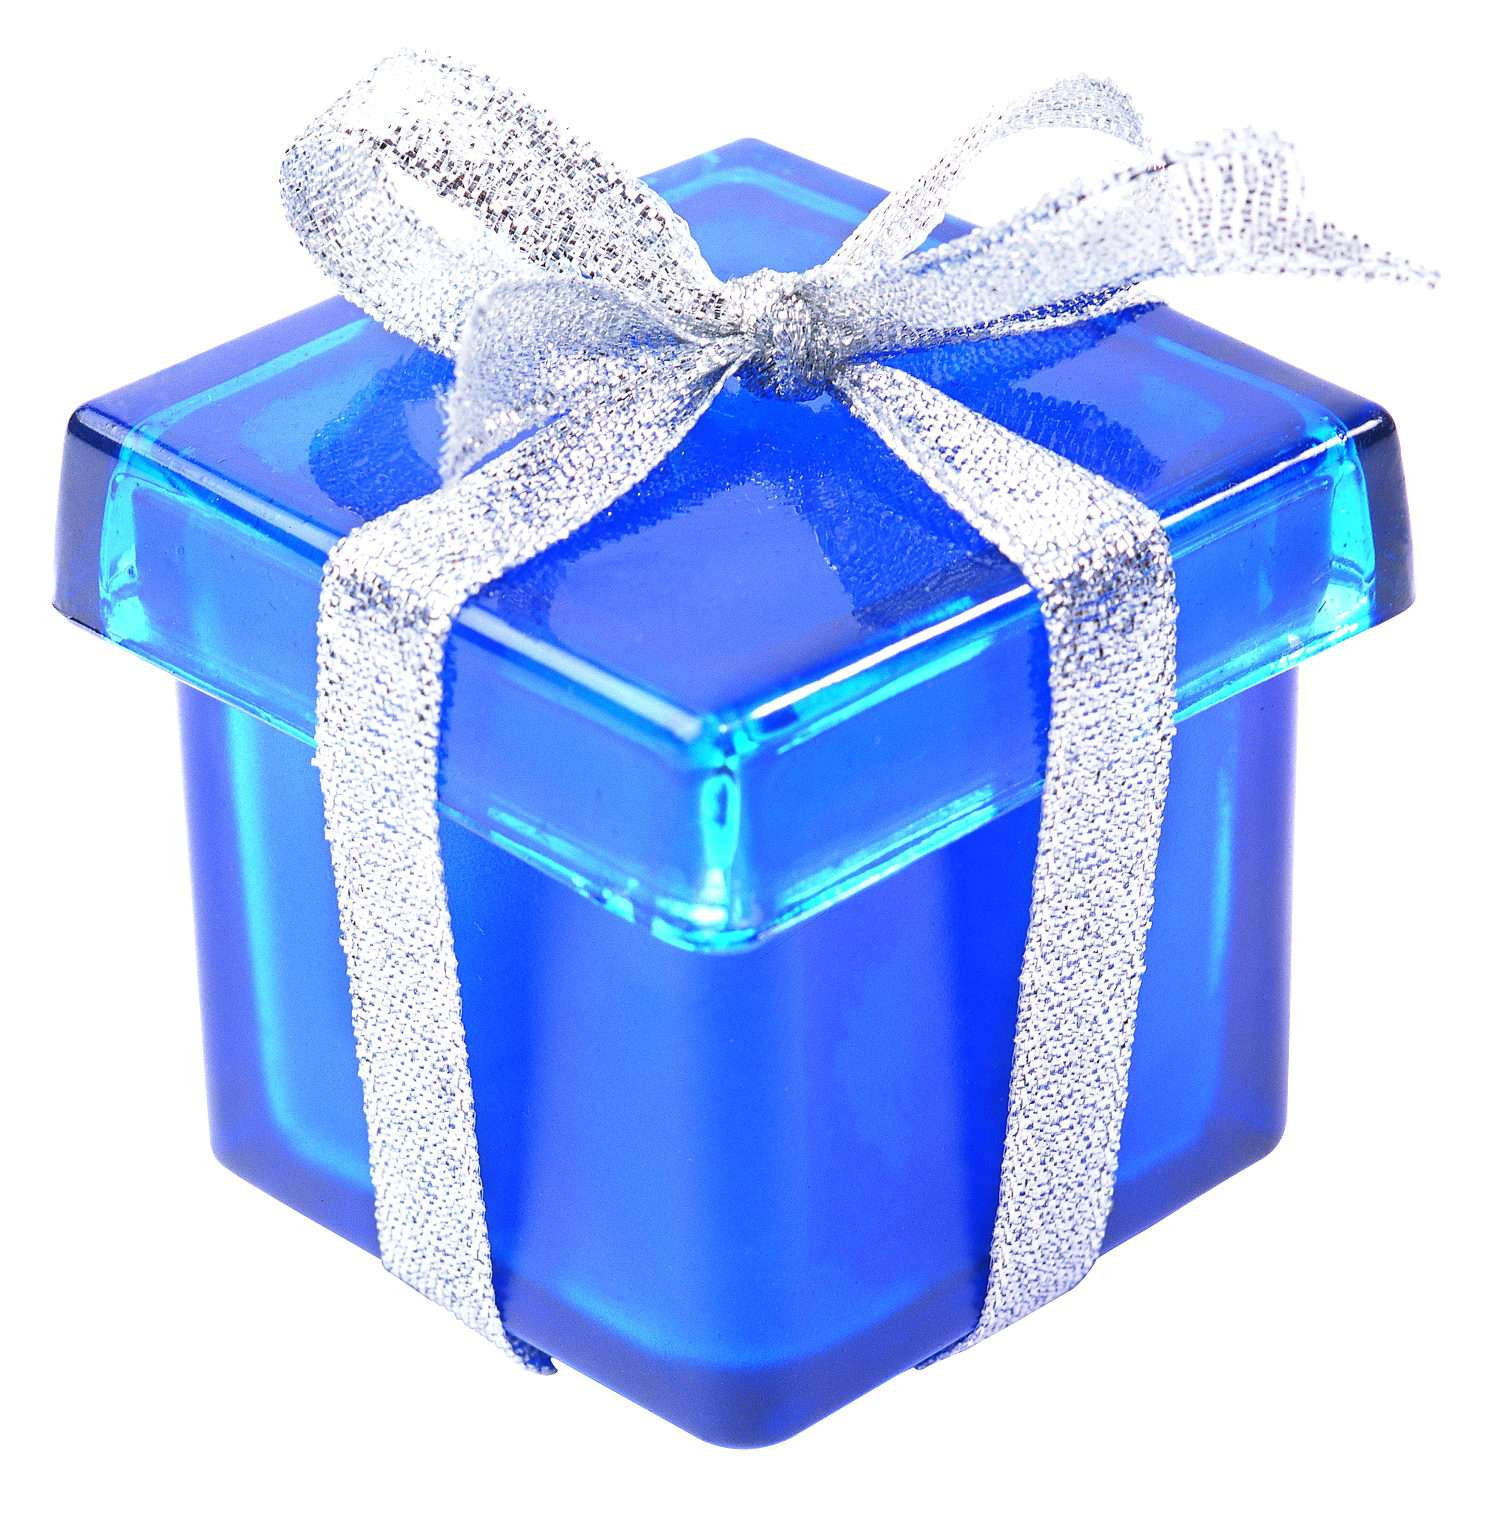 Kinds of presents. Подарок голубой. Подарок синий. Подарок синяя коробка. Подарок на день рождения.